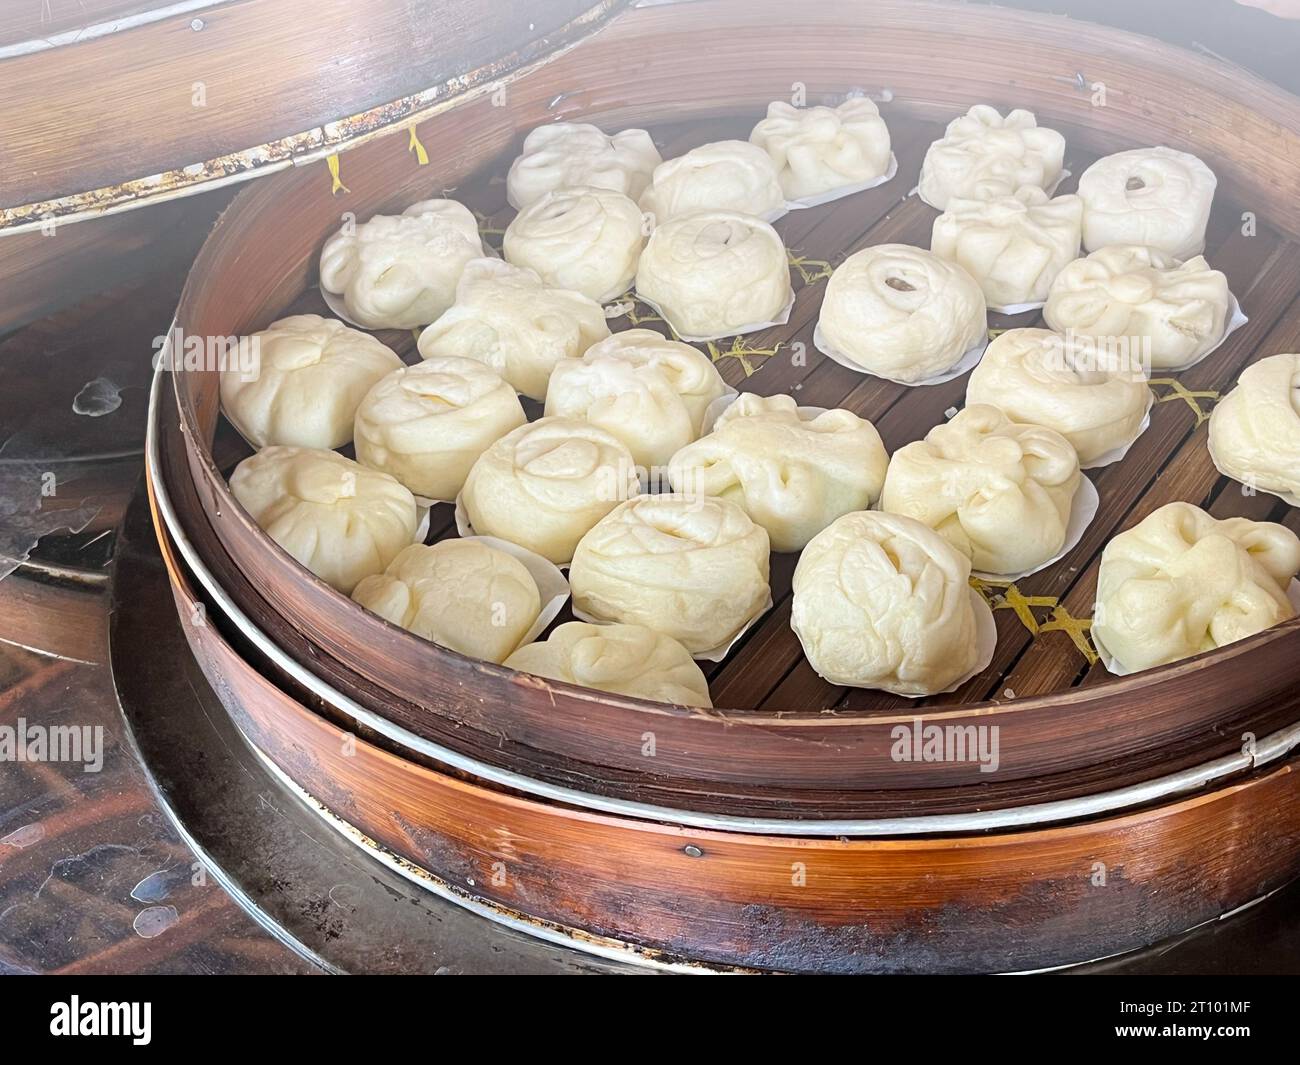 Bakpao, Baozi gedämpftes Brötchen, Pao, Dim Sum in einem Bambusdampfer. Eine Art Hefe-gesäuertes Brötchen in verschiedenen chinesischen Küchen. Stockfoto